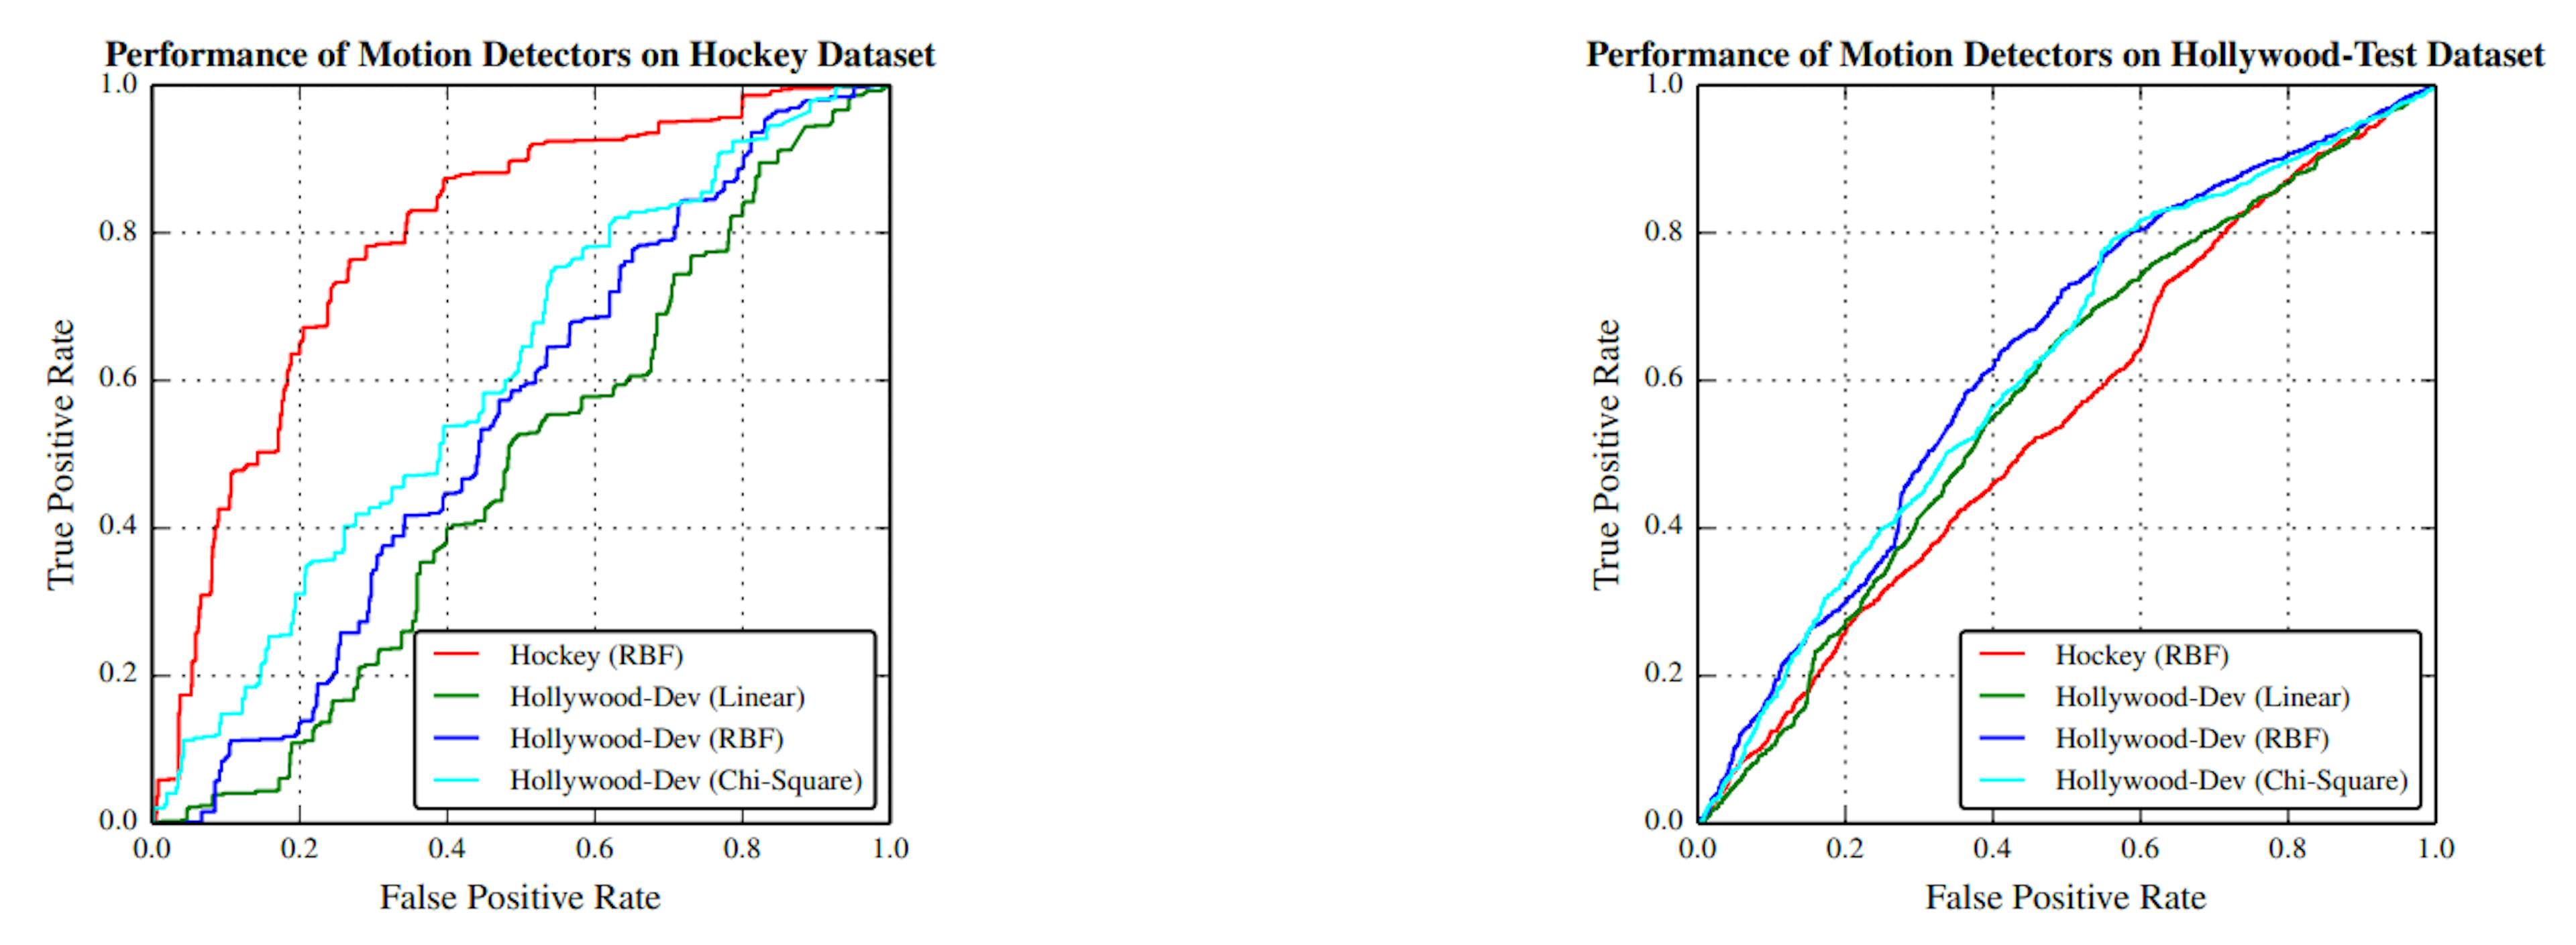 图 4.5：运动特征分类器在 Hockey 和 HollywoodTest 数据集上的表现。红色曲线表示在 Hockey 数据集上训练的分类器，其余三条曲线表示在 Hollywood-Dev 数据集上使用线性、RBF 和卡方核训练的三个分类器。